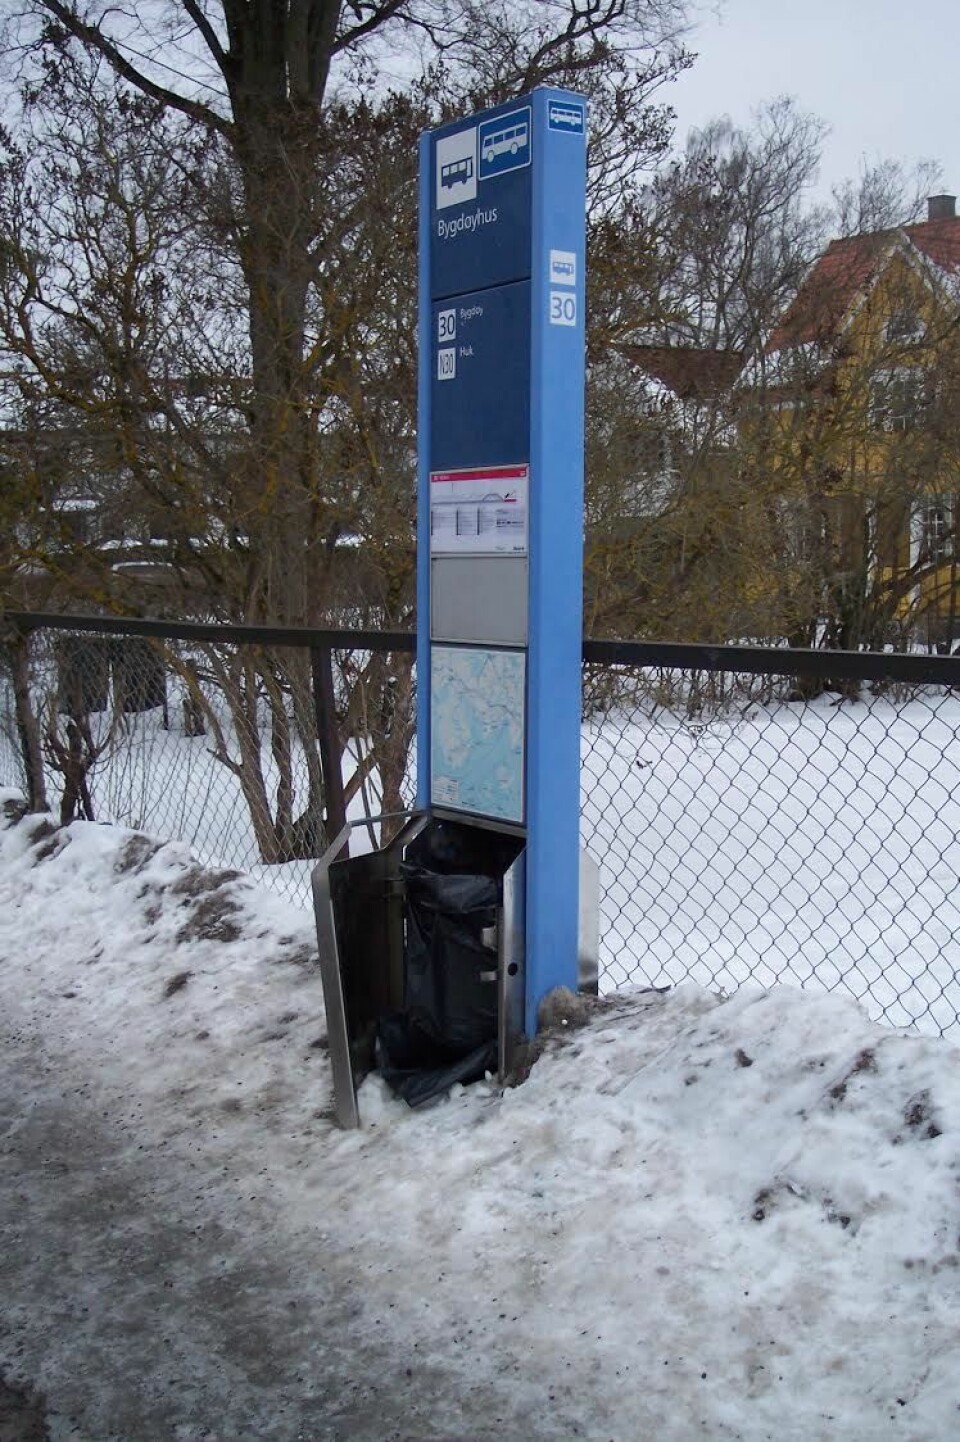 Is, snø og vandalisme. Søppelkassen ved 30-bussens stoppested Bygdøyhus fungerer dårlig. Foto: Jens Petter Rotnes